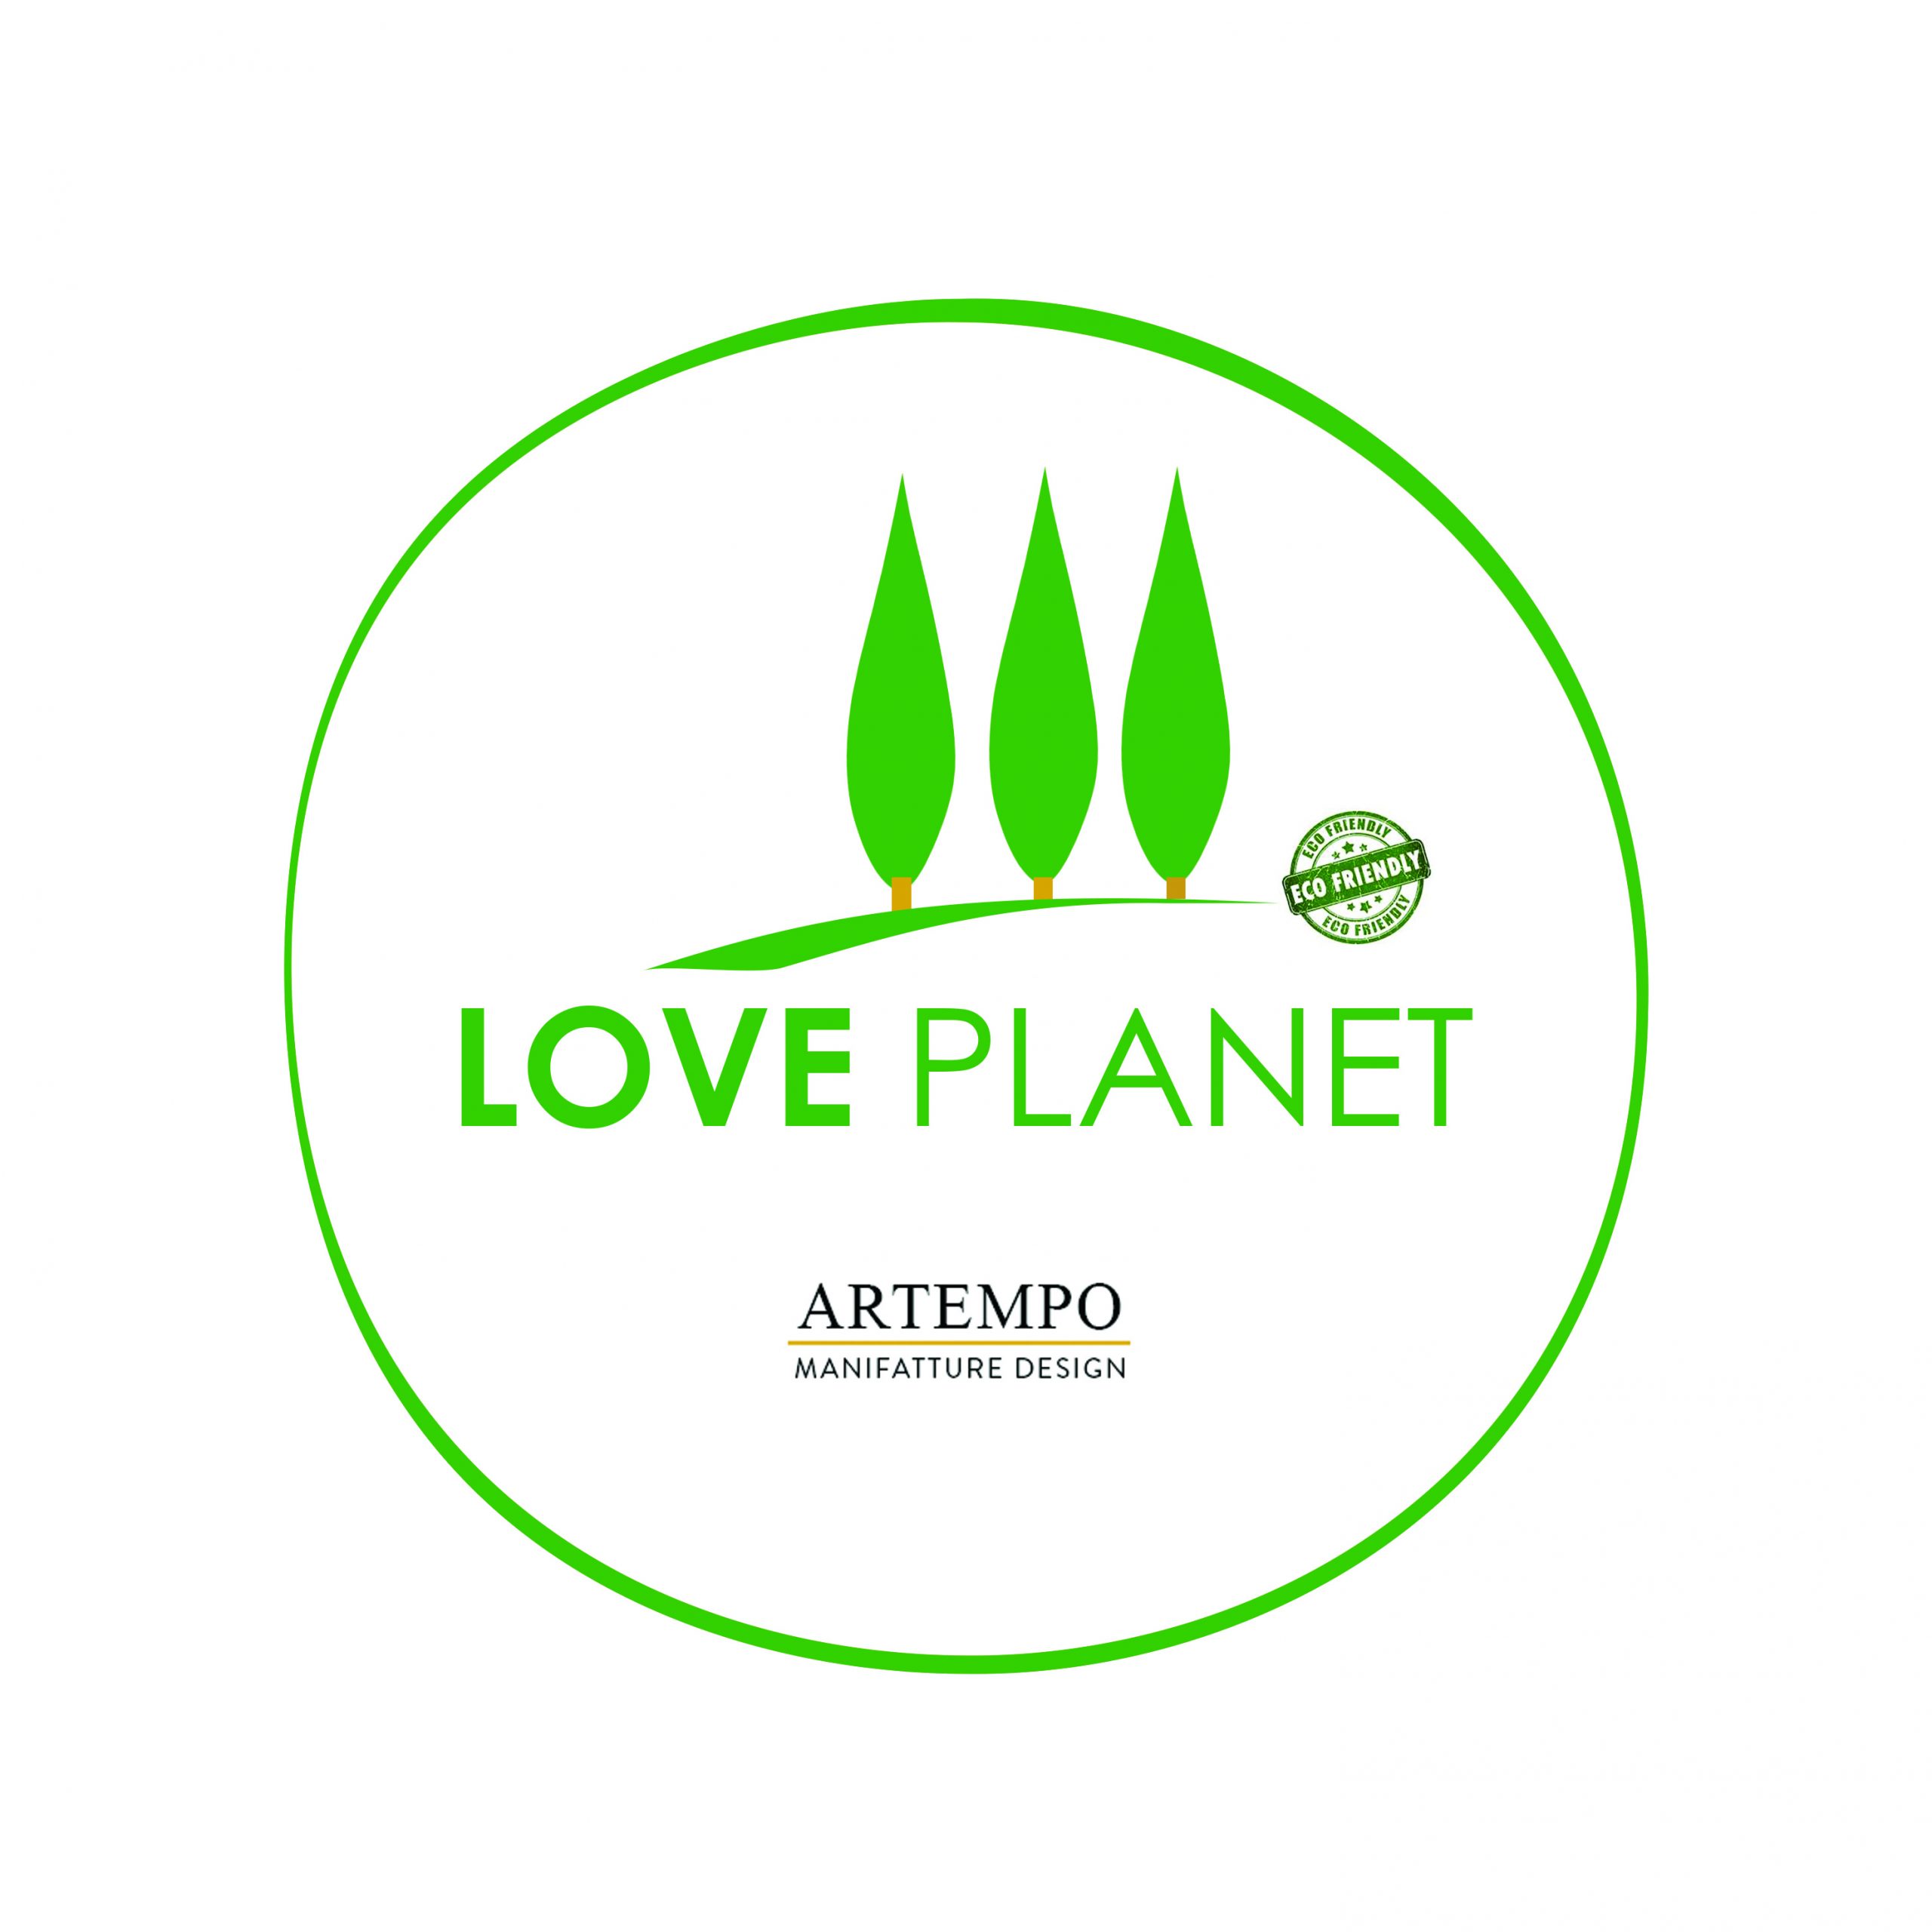 Love Planet Amiamo il nostro pianeta Artempo Manifatture Design Empoli